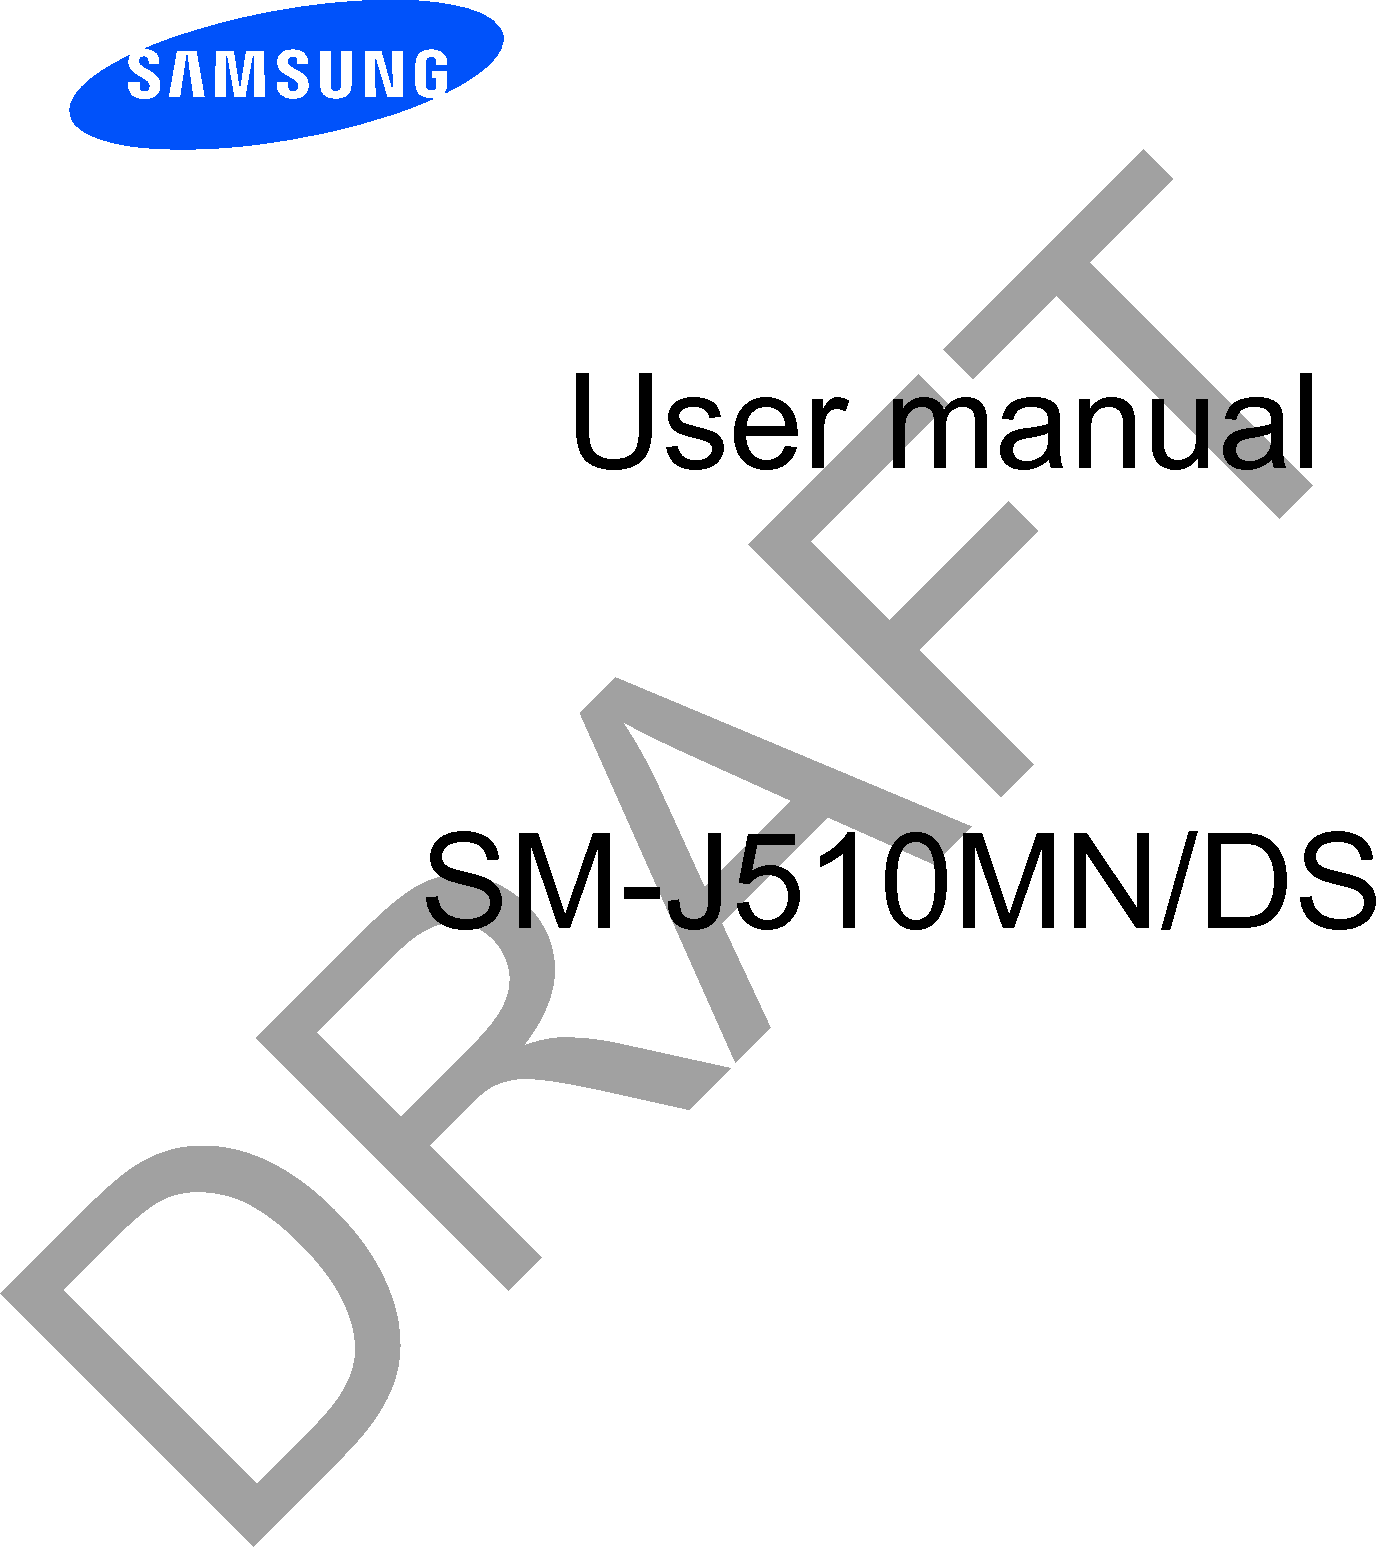 User manualSM-J510MN/DSDRAFT